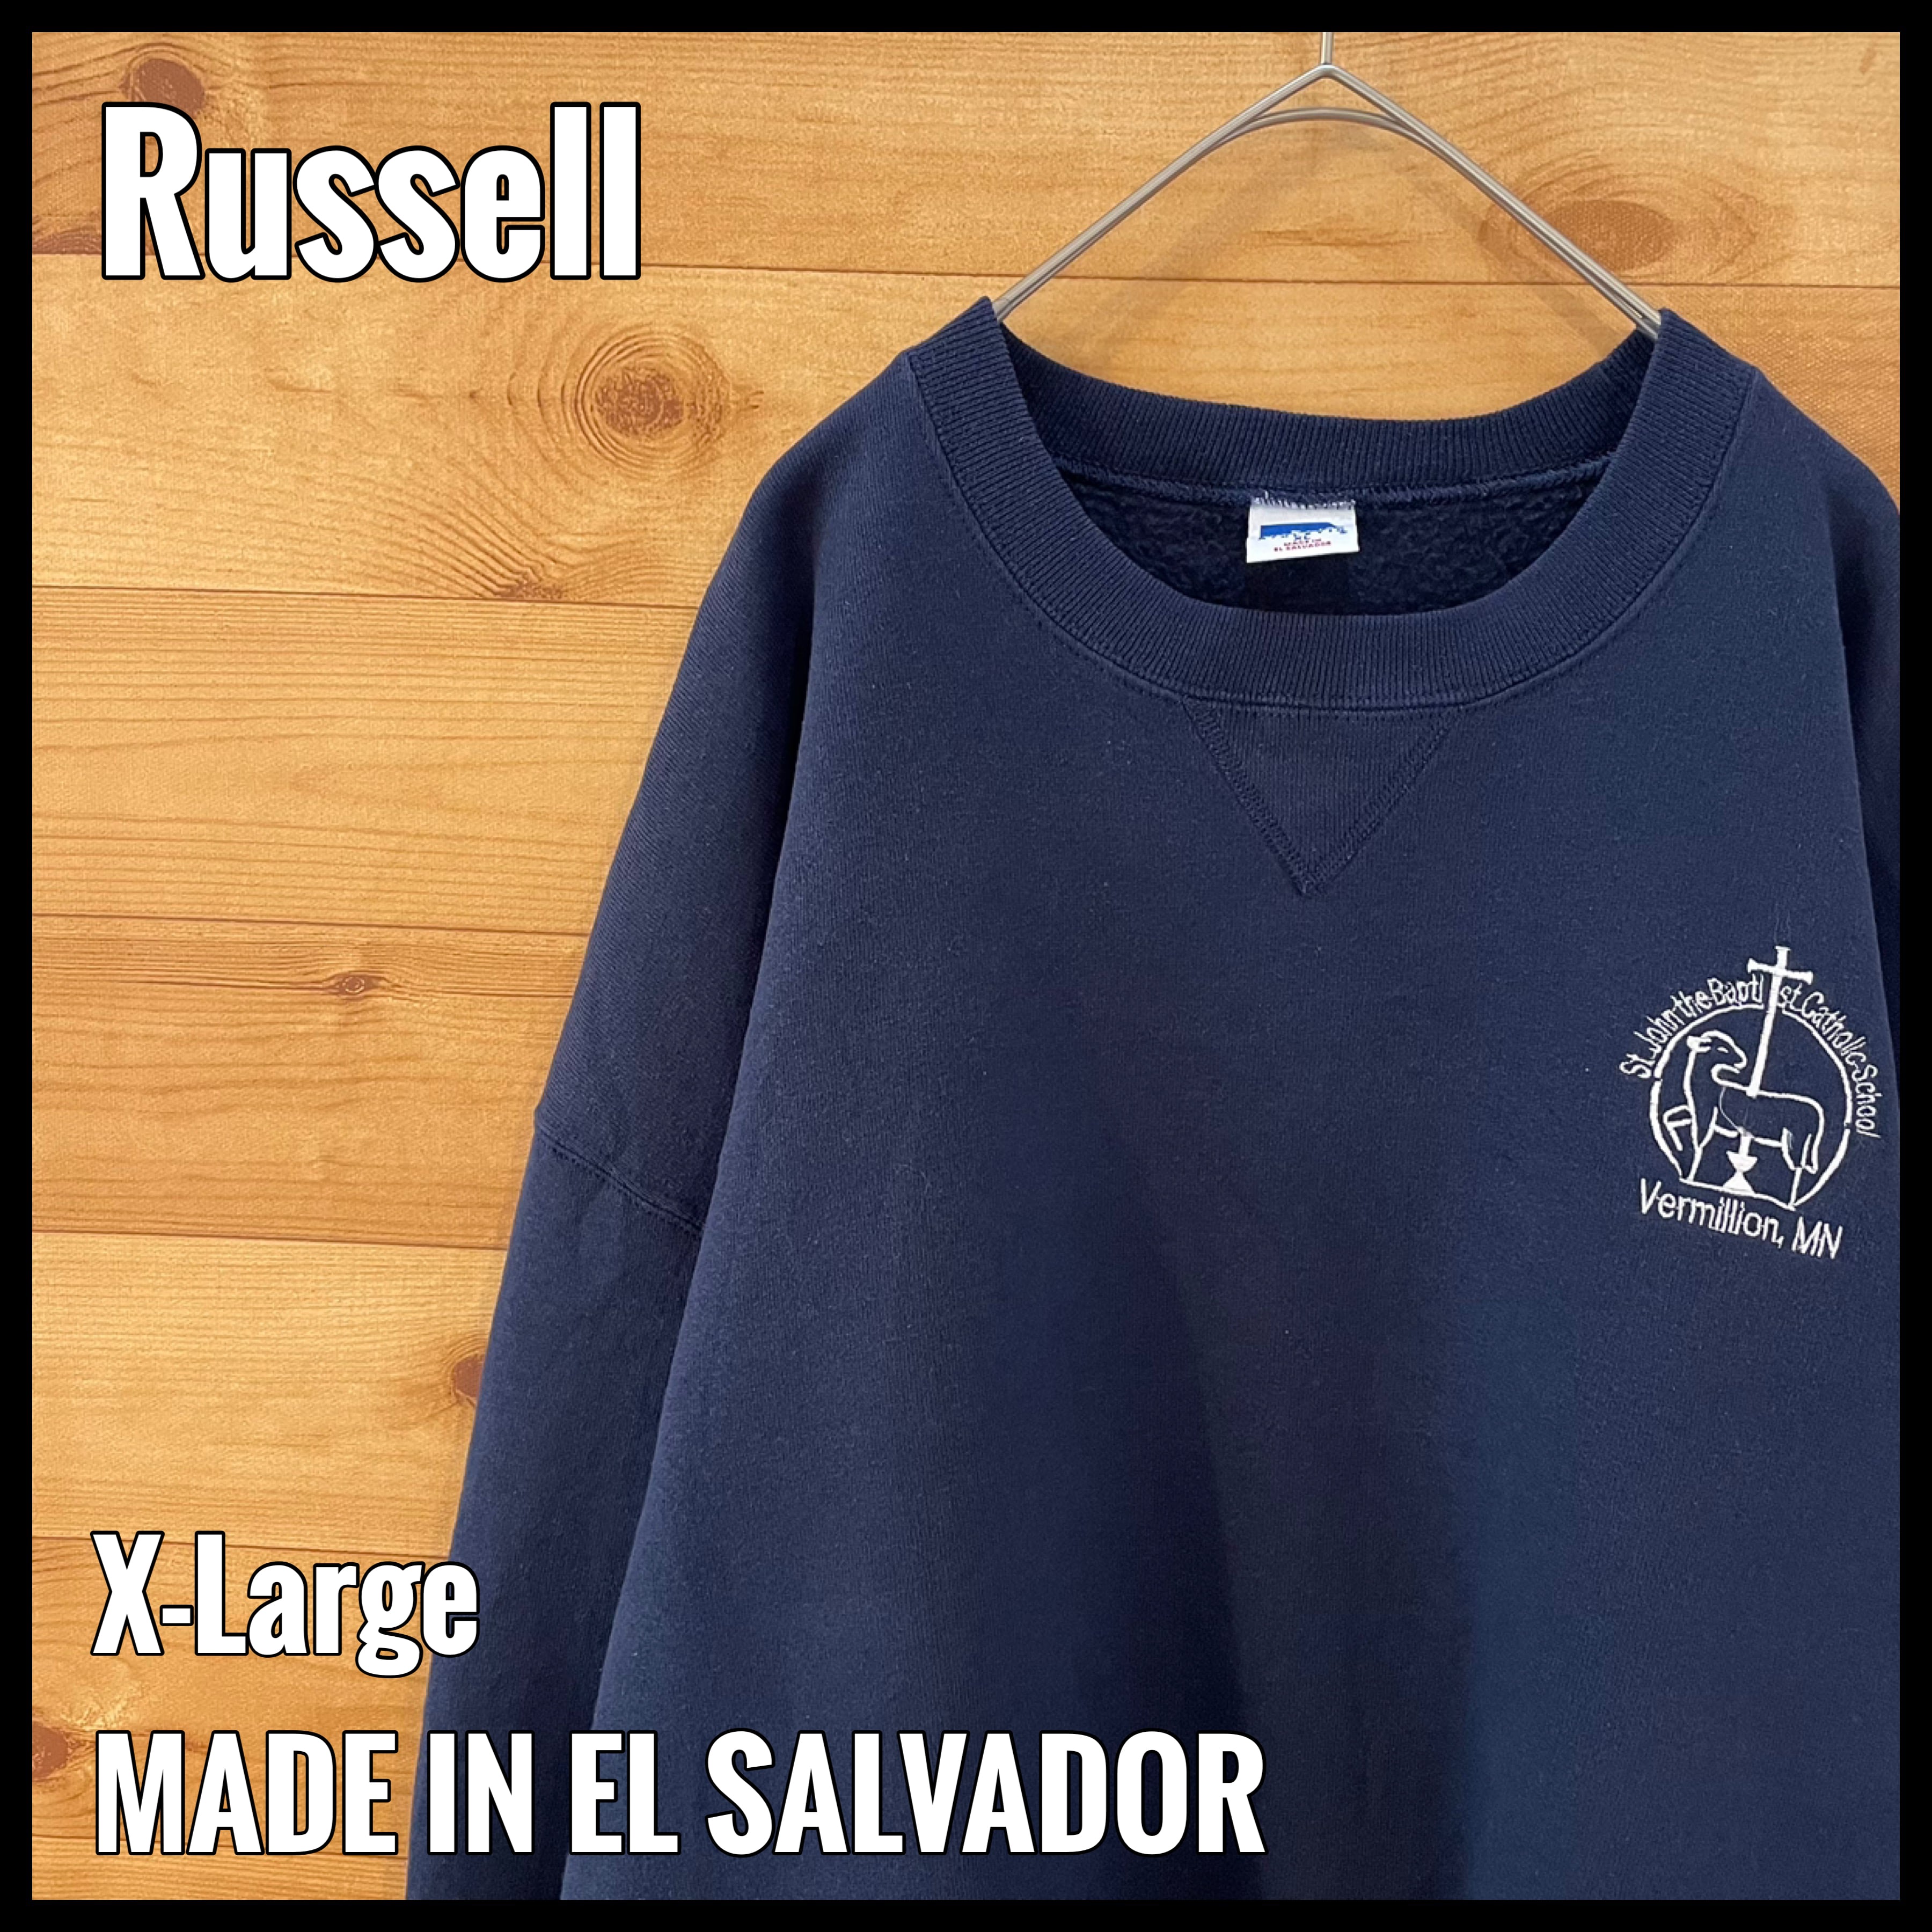 Russell】カトリックスクール 刺繍ロゴ トレーナー スウェット XL ...